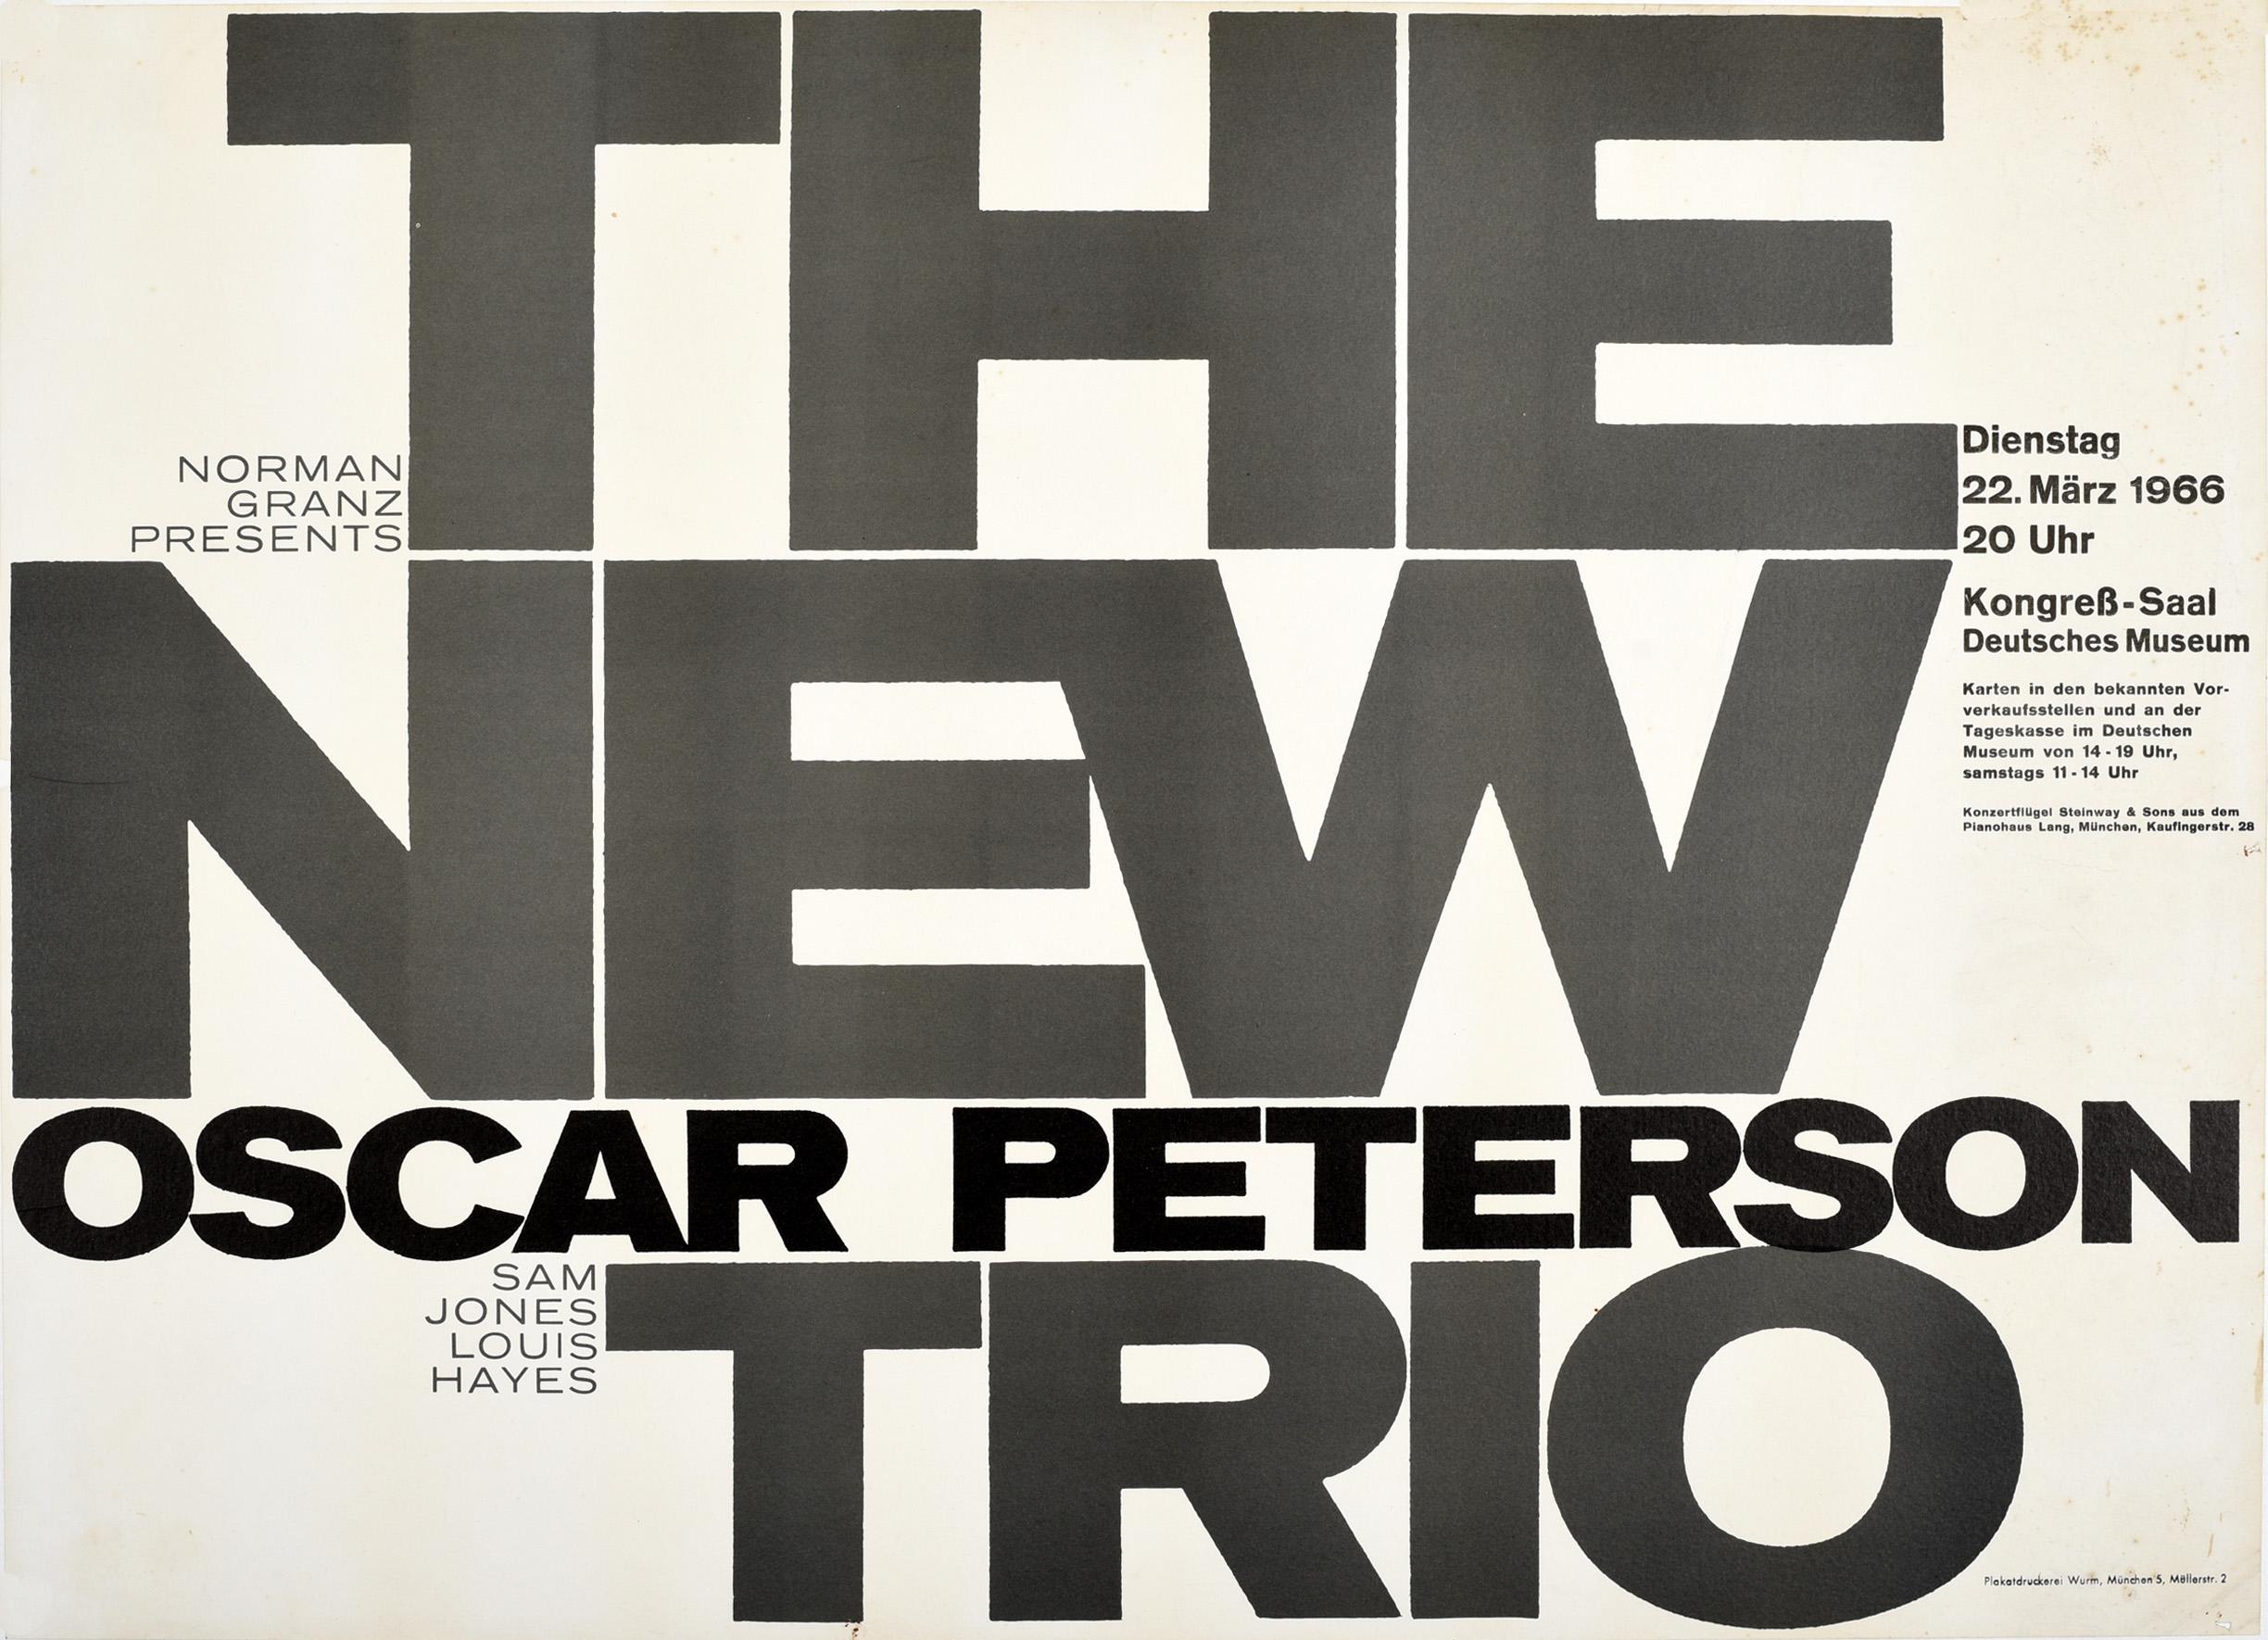 Affiche publicitaire originale d'époque sur la musique de jazz - Norman Granz presents The New Oscar Peterson Trio Sam Jones Louis Hayes - pour un concert donné le 22 mars 1966. Cette affiche présente une conception typographique avec le titre en